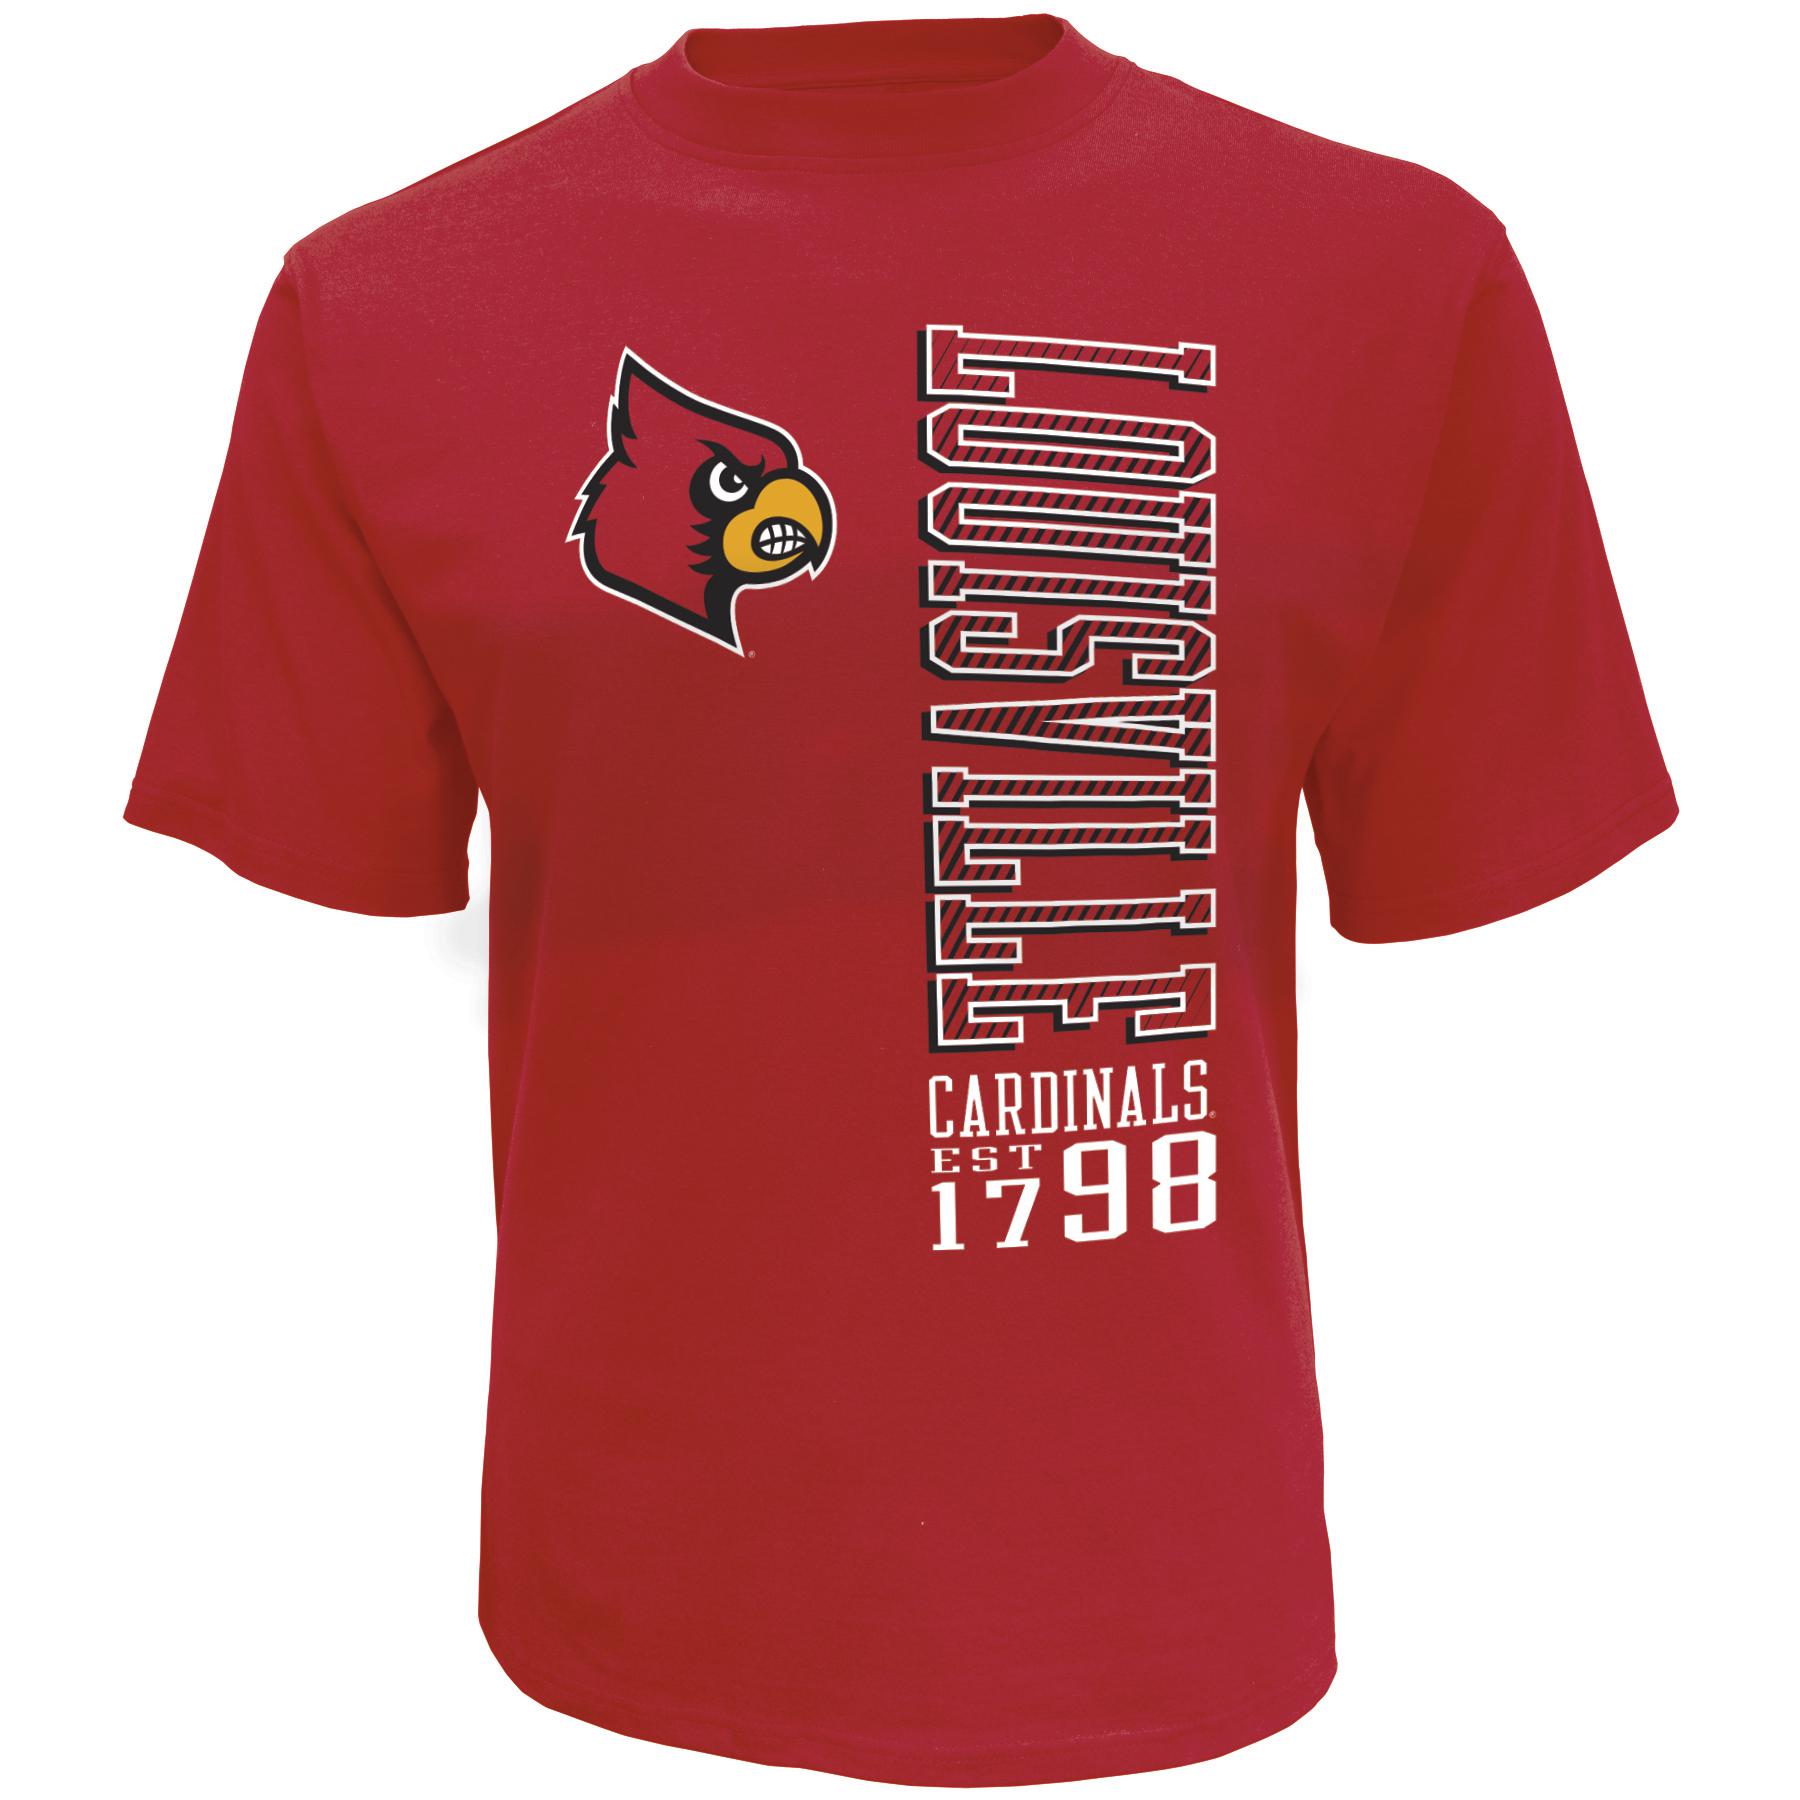 NCAA Men's Big & Tall Graphic T-Shirt - Louisville Cardinals